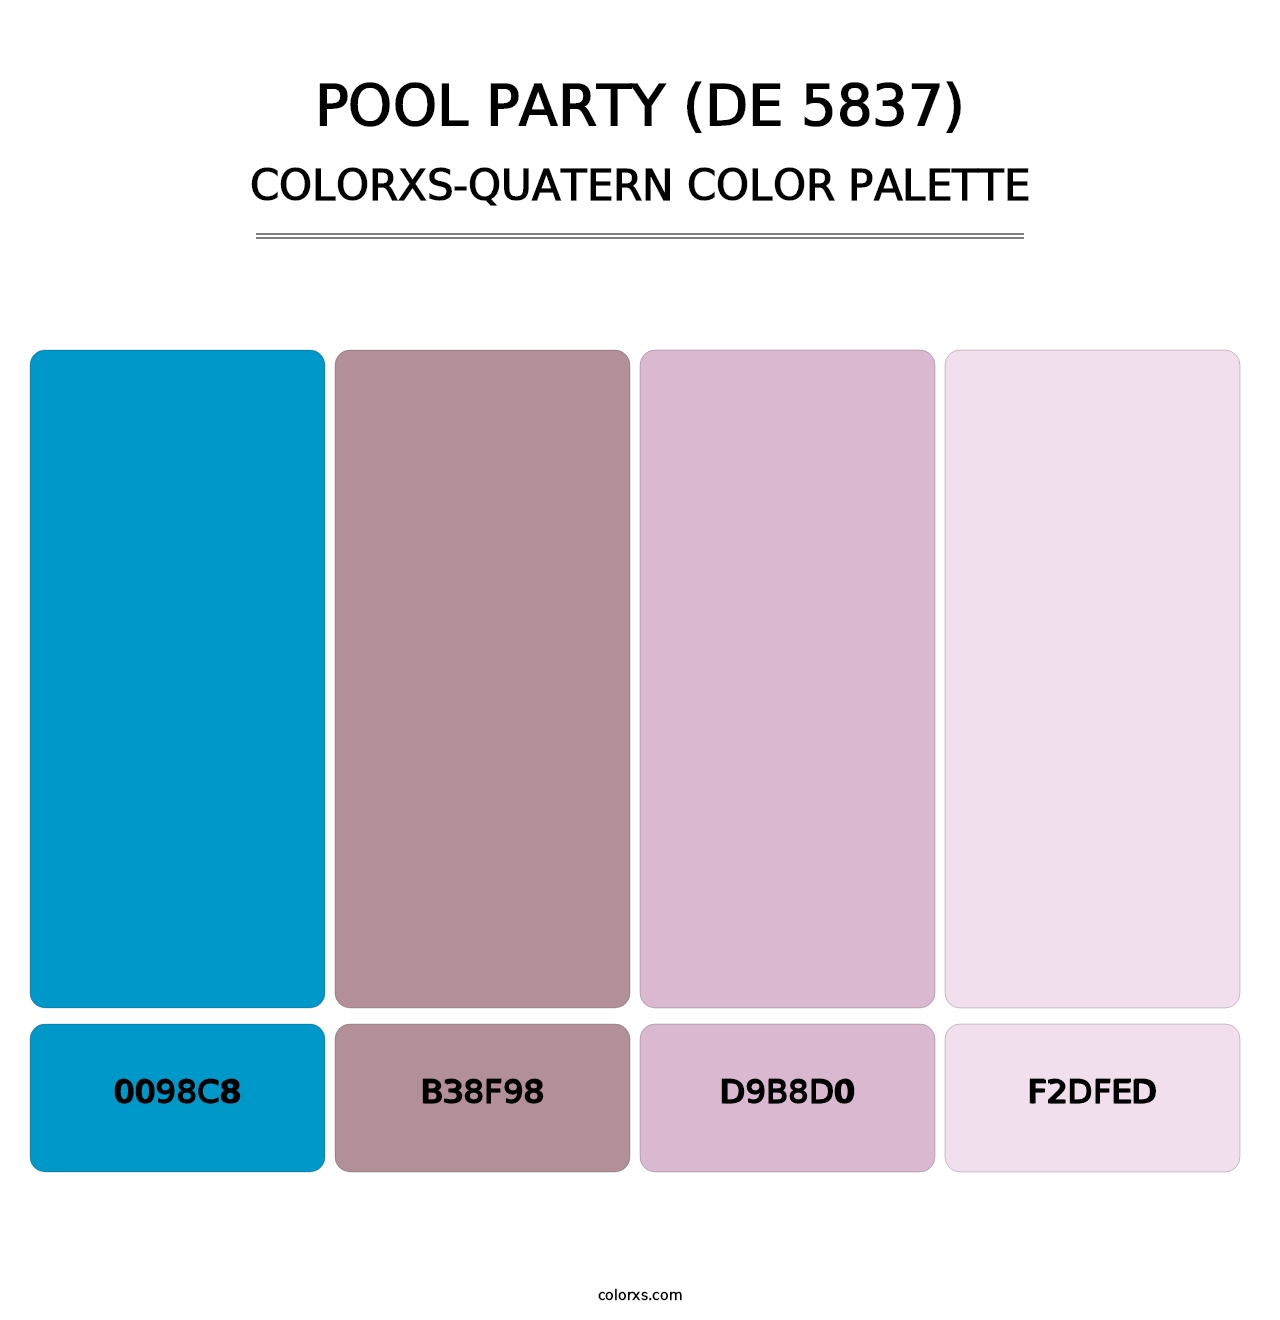 Pool Party (DE 5837) - Colorxs Quatern Palette